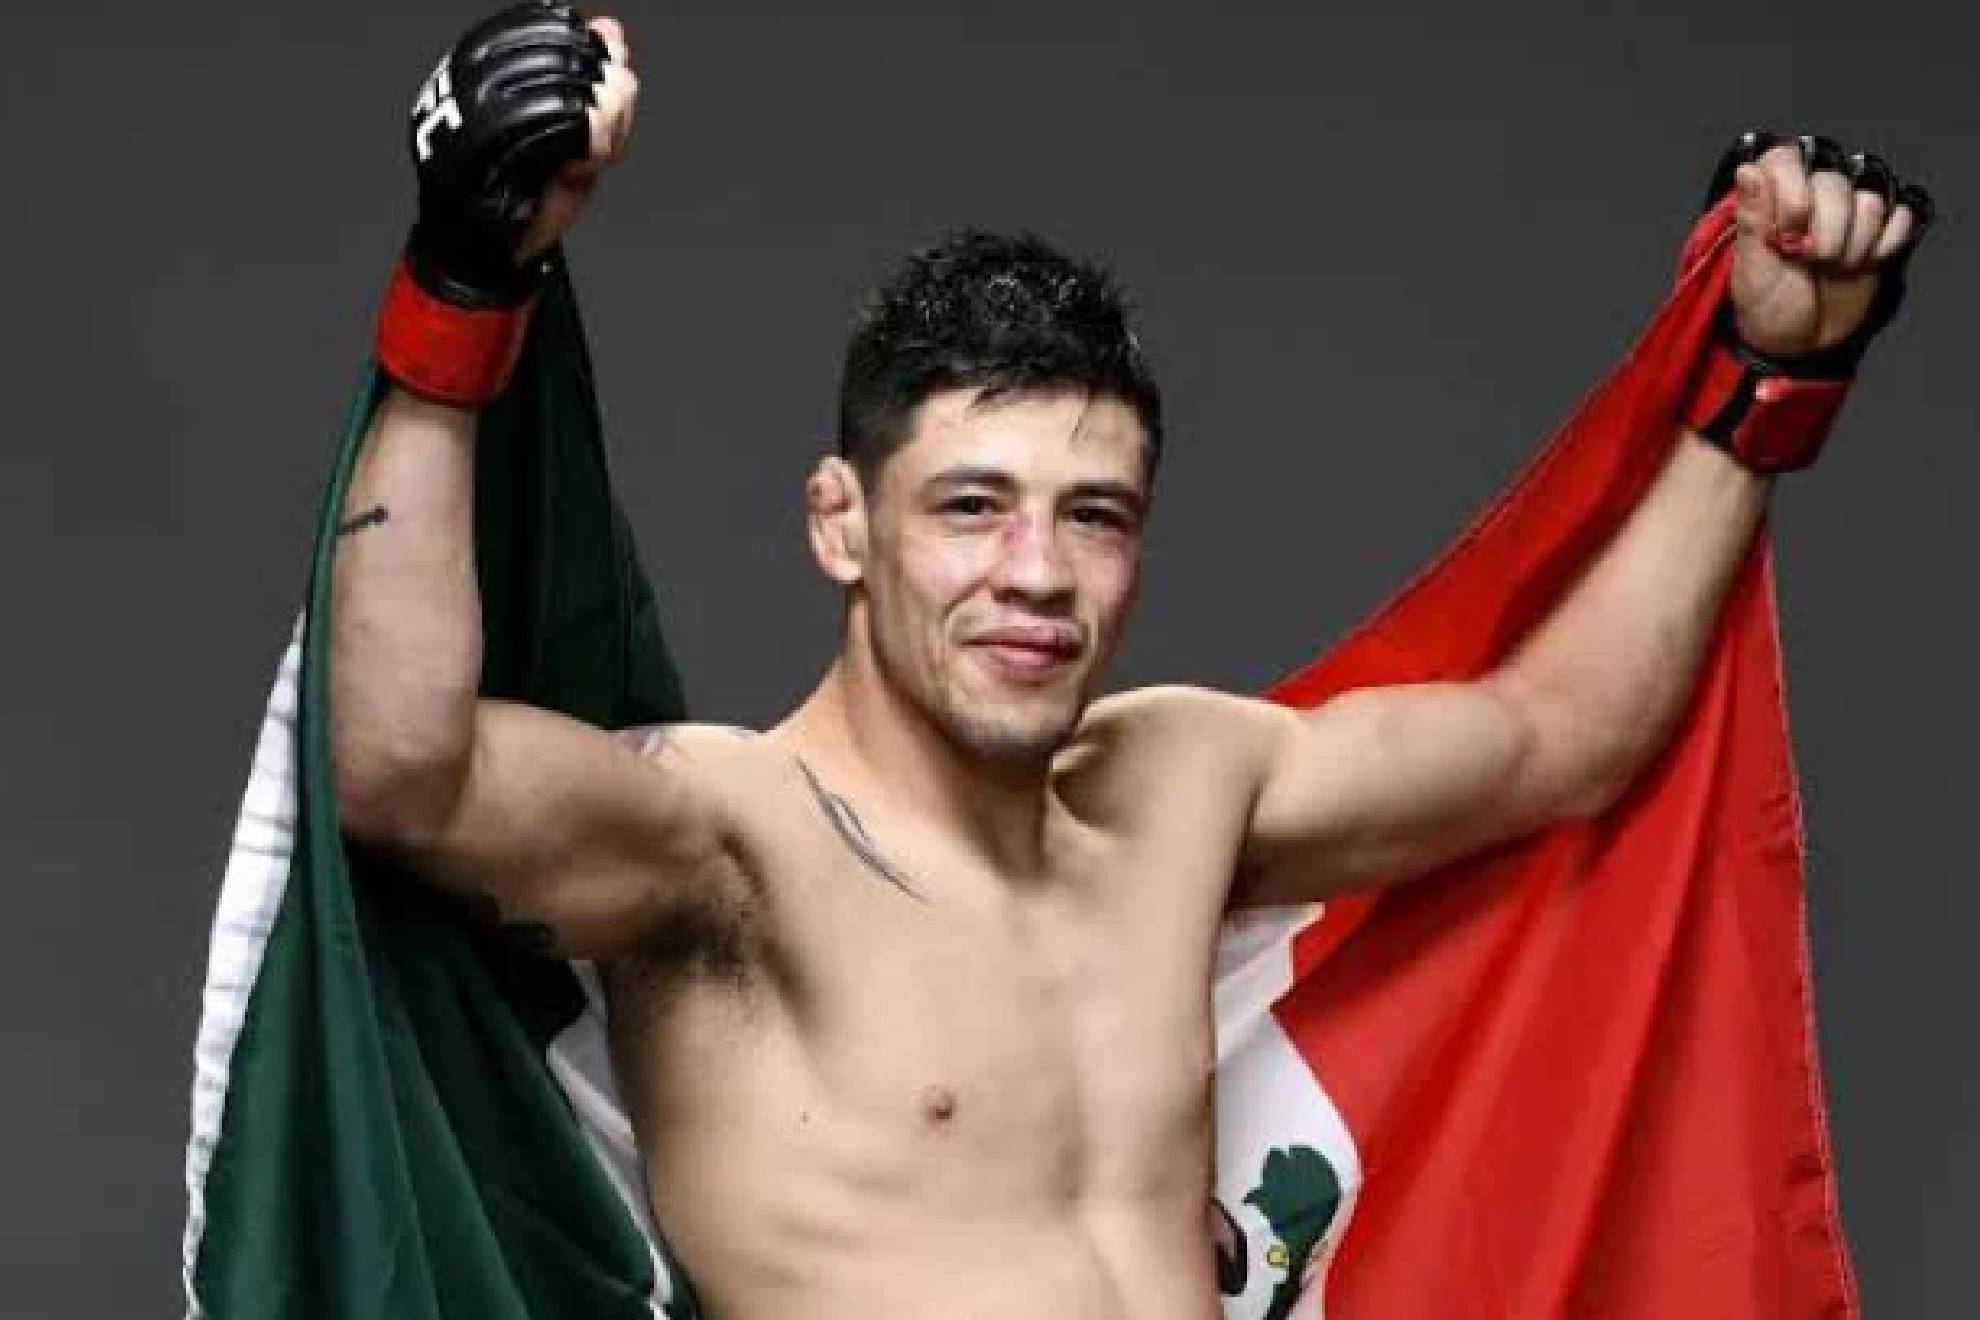 El peleador mexicano quiere seguir haciendo historia en la UFC.